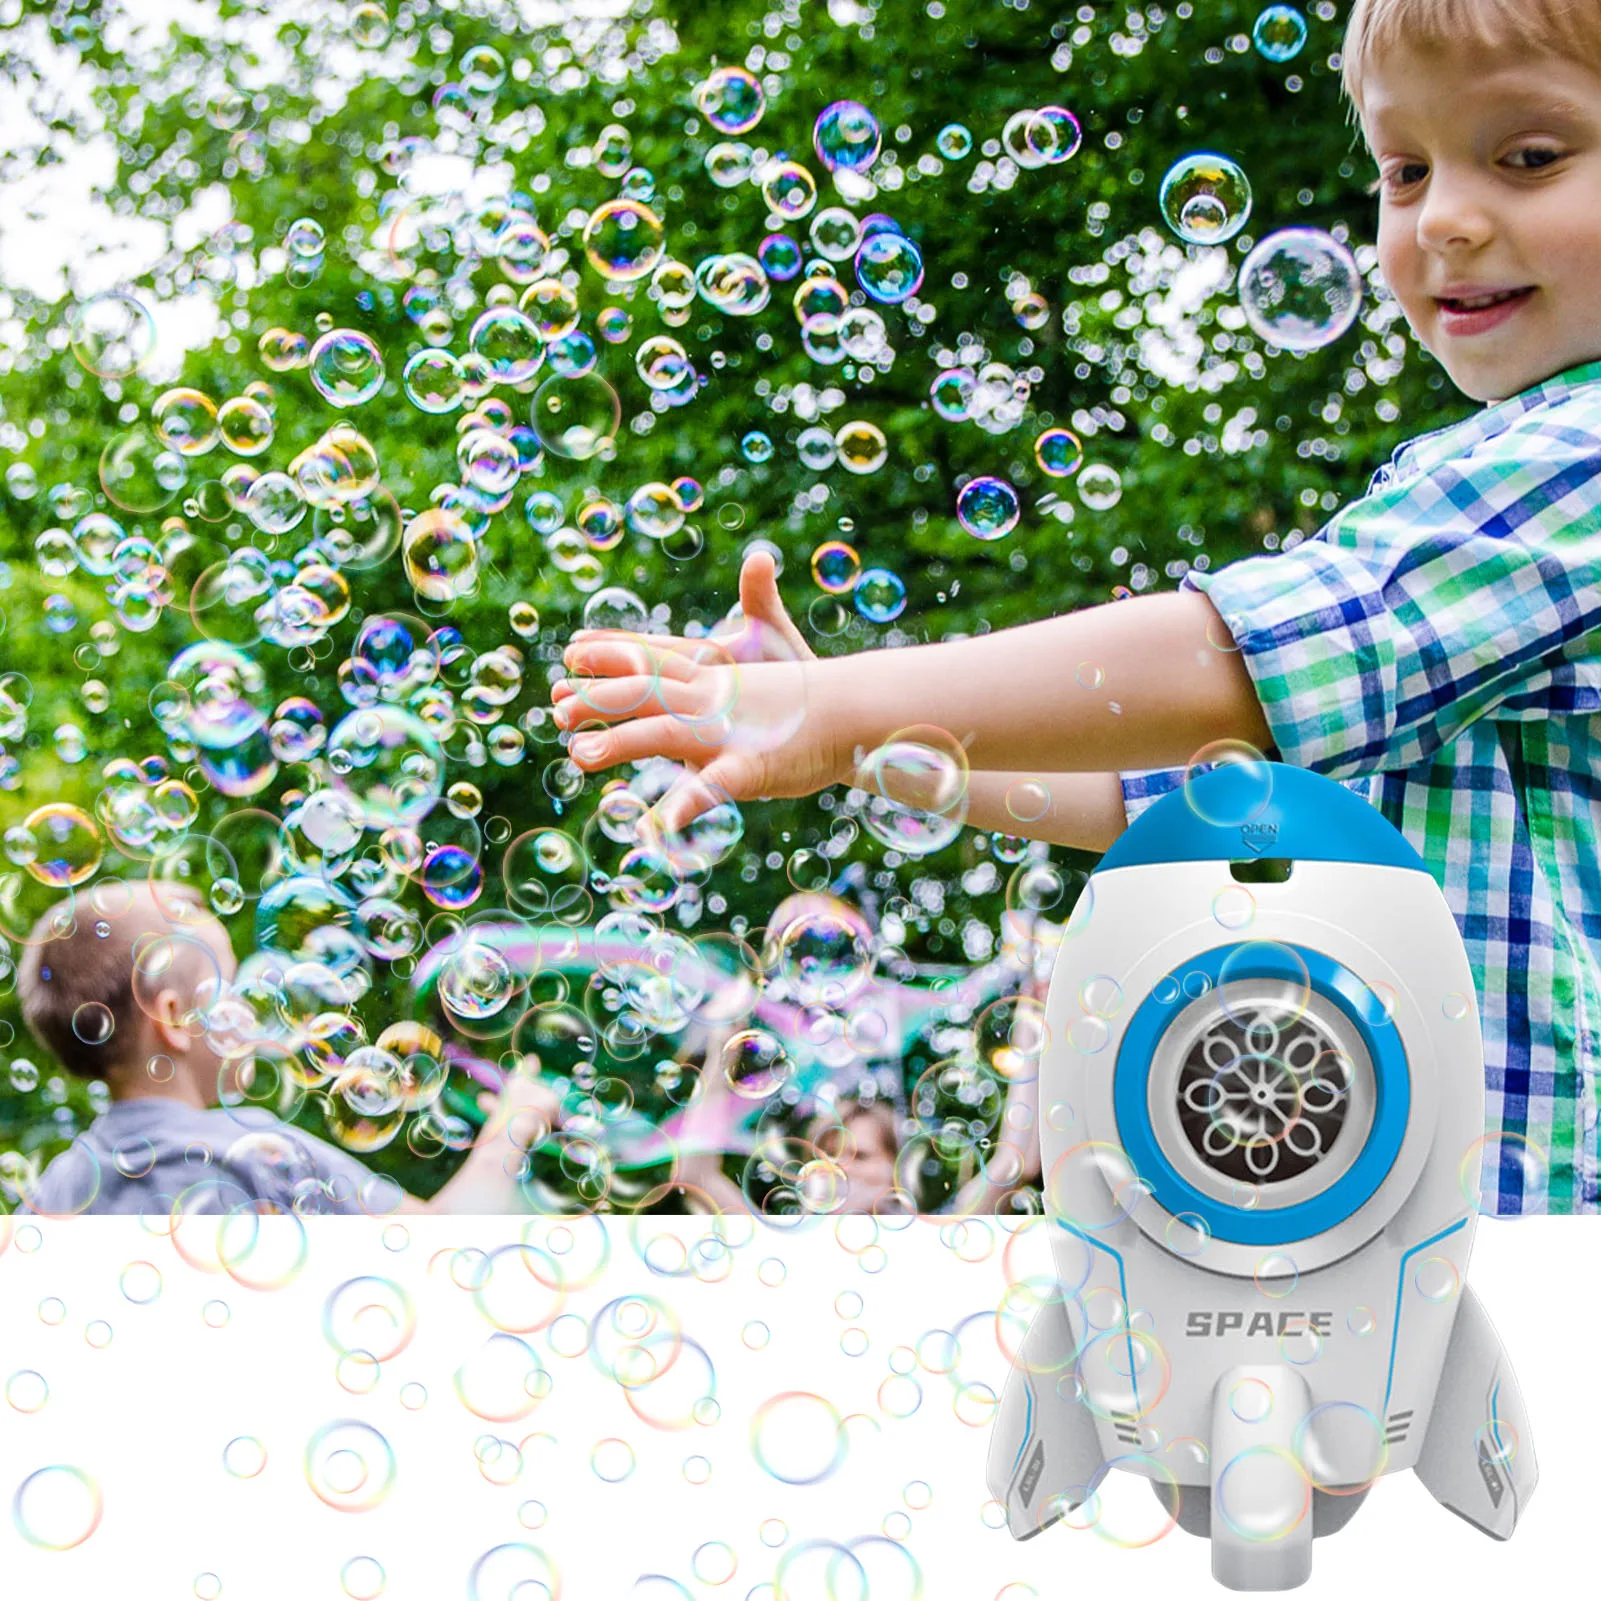 

Rocket Launcher Bubble MachineBubble Machine For Kids Outdoor Space Rocket Launcher Bubble Maker 1000 Bubbles Per Minute